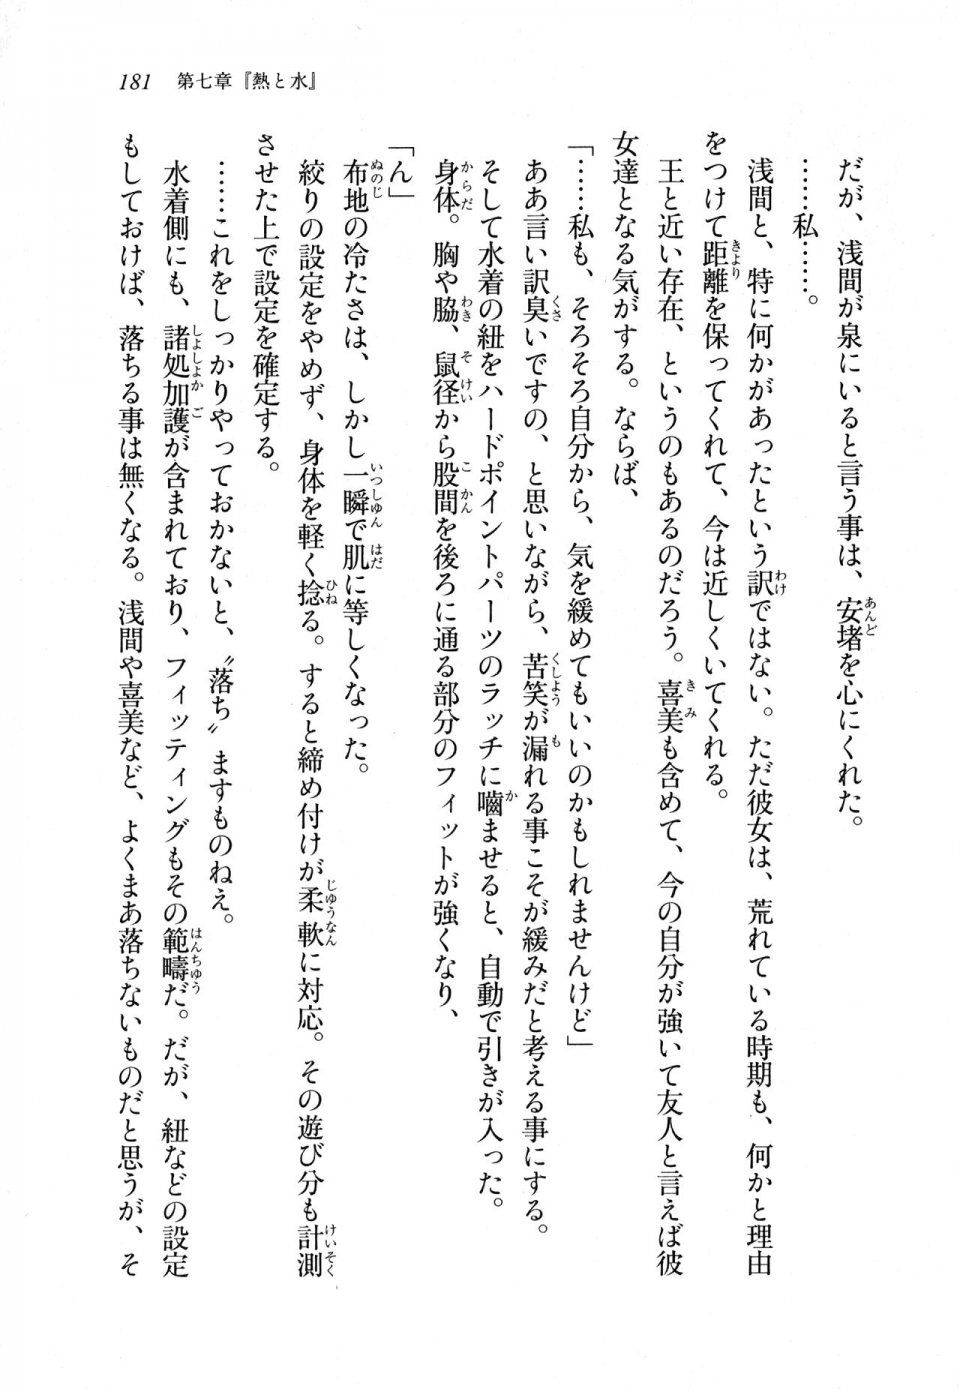 Kyoukai Senjou no Horizon LN Sidestory Vol 1 - Photo #179